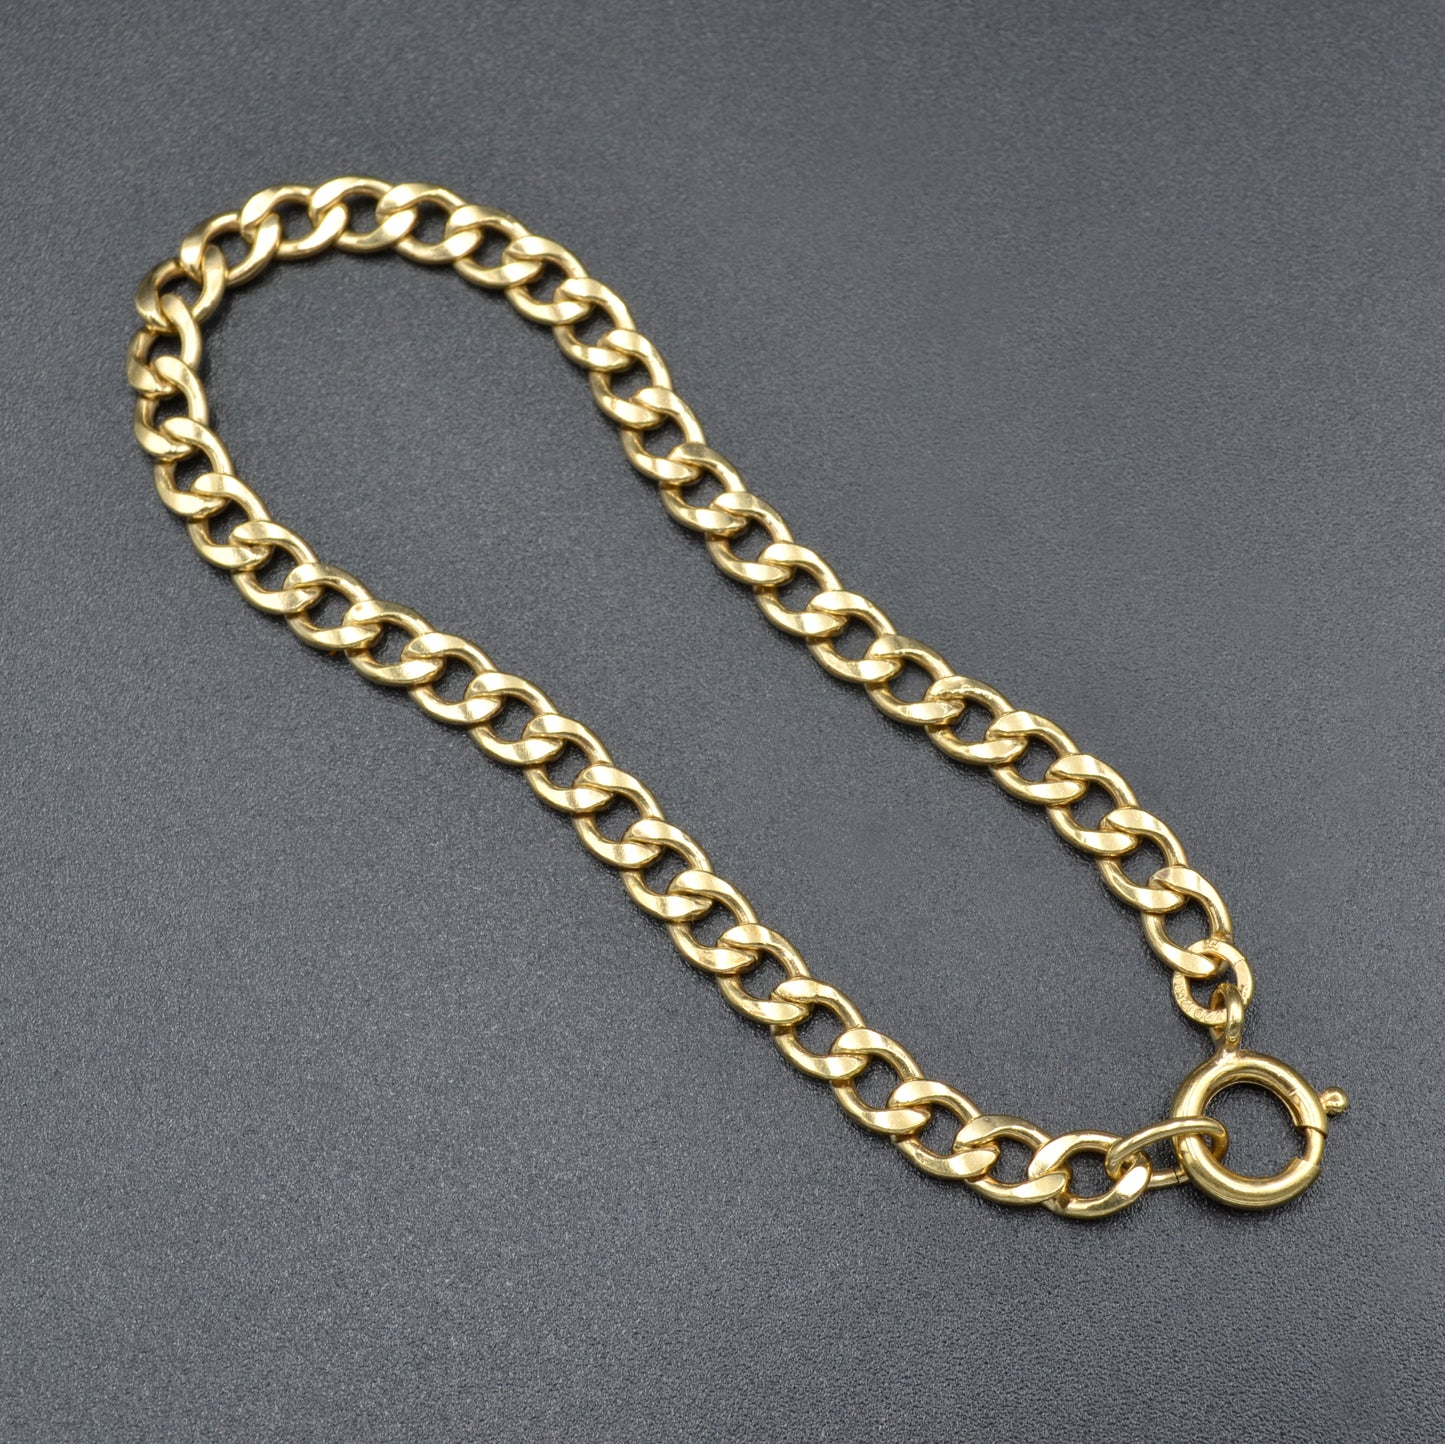 Curb Link Bracelet